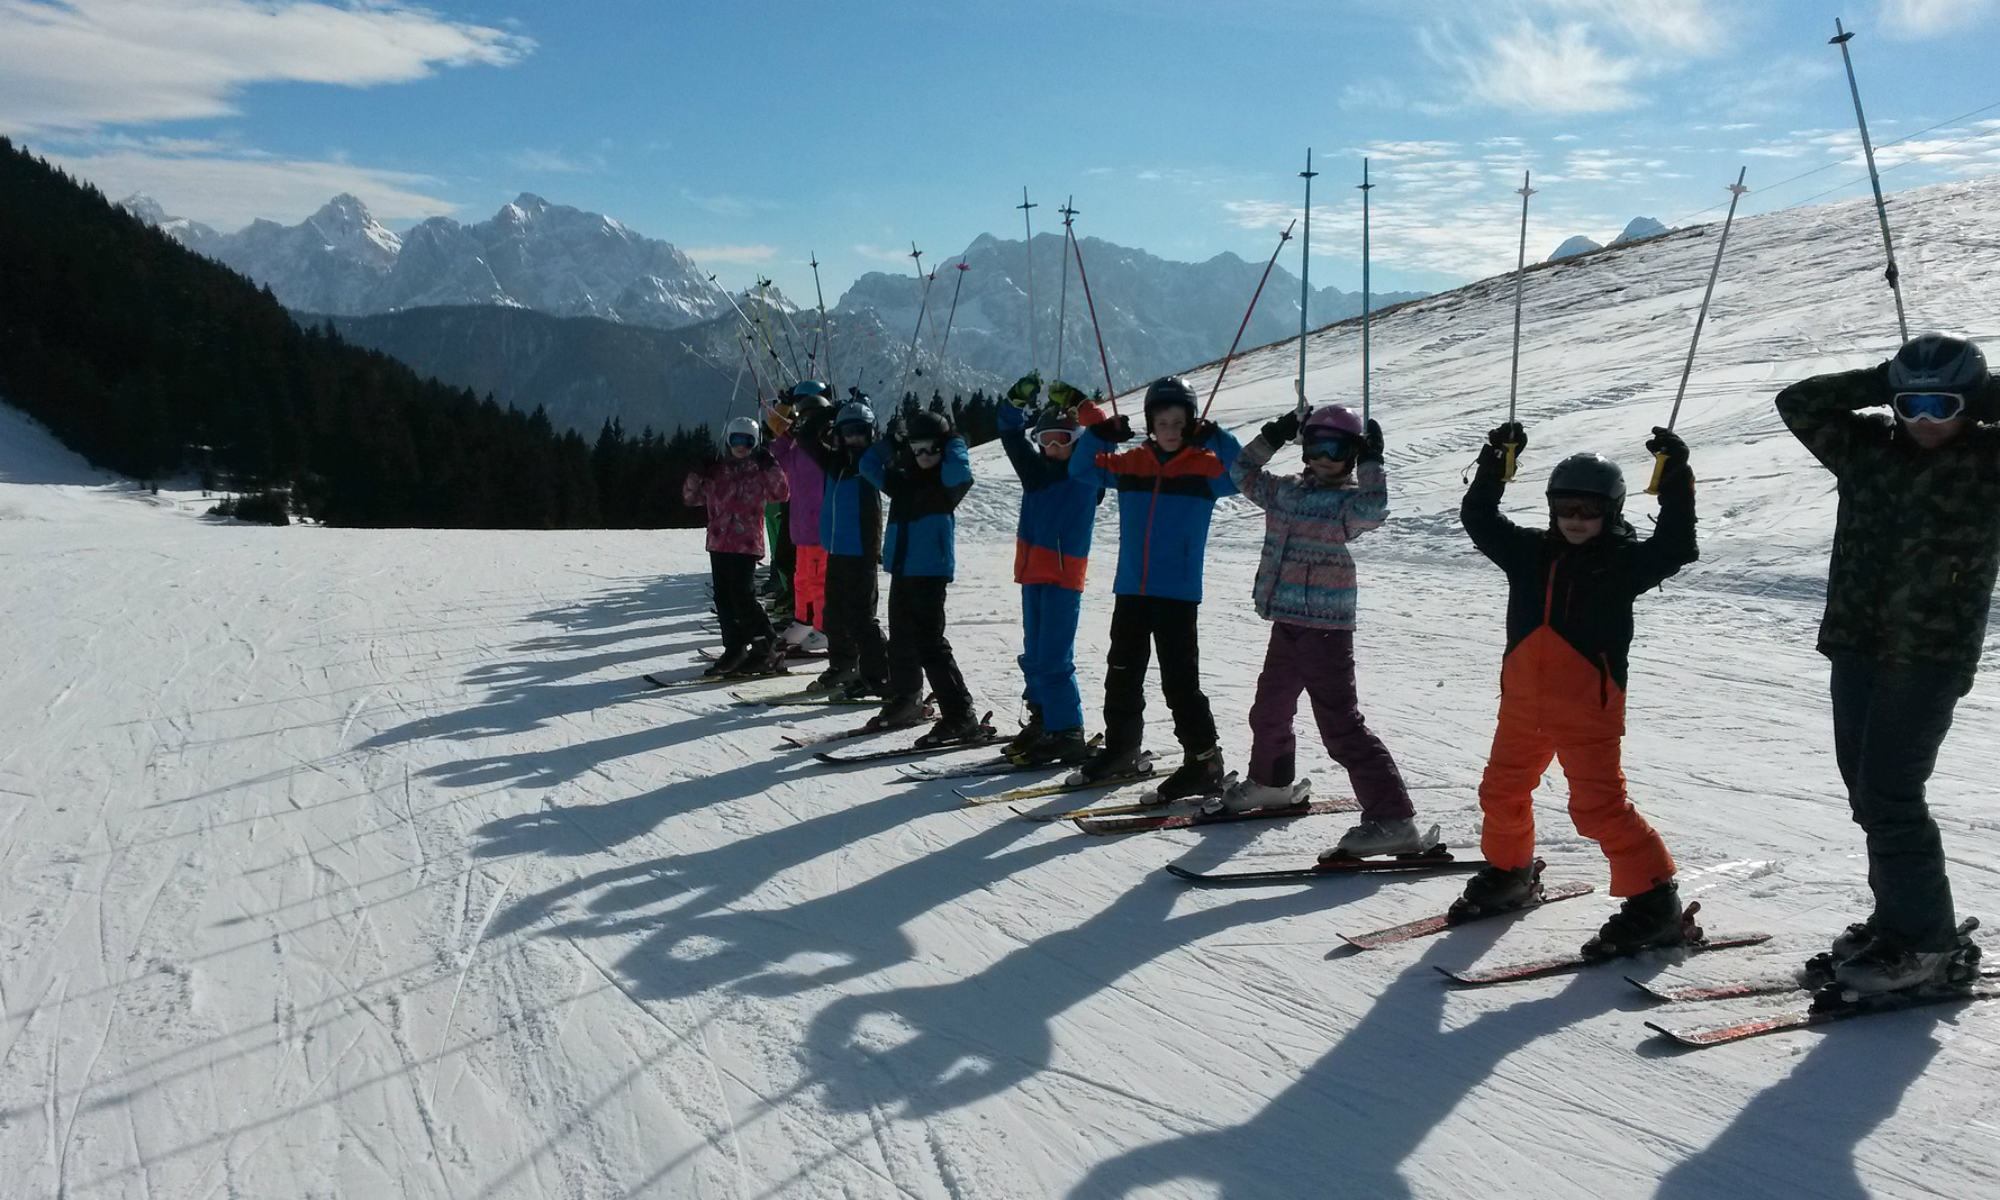 Ski trip. Лыжная группа. Холдоми горнолыжный курорт. Группа на лыжах. Массовое катание на лыжах.